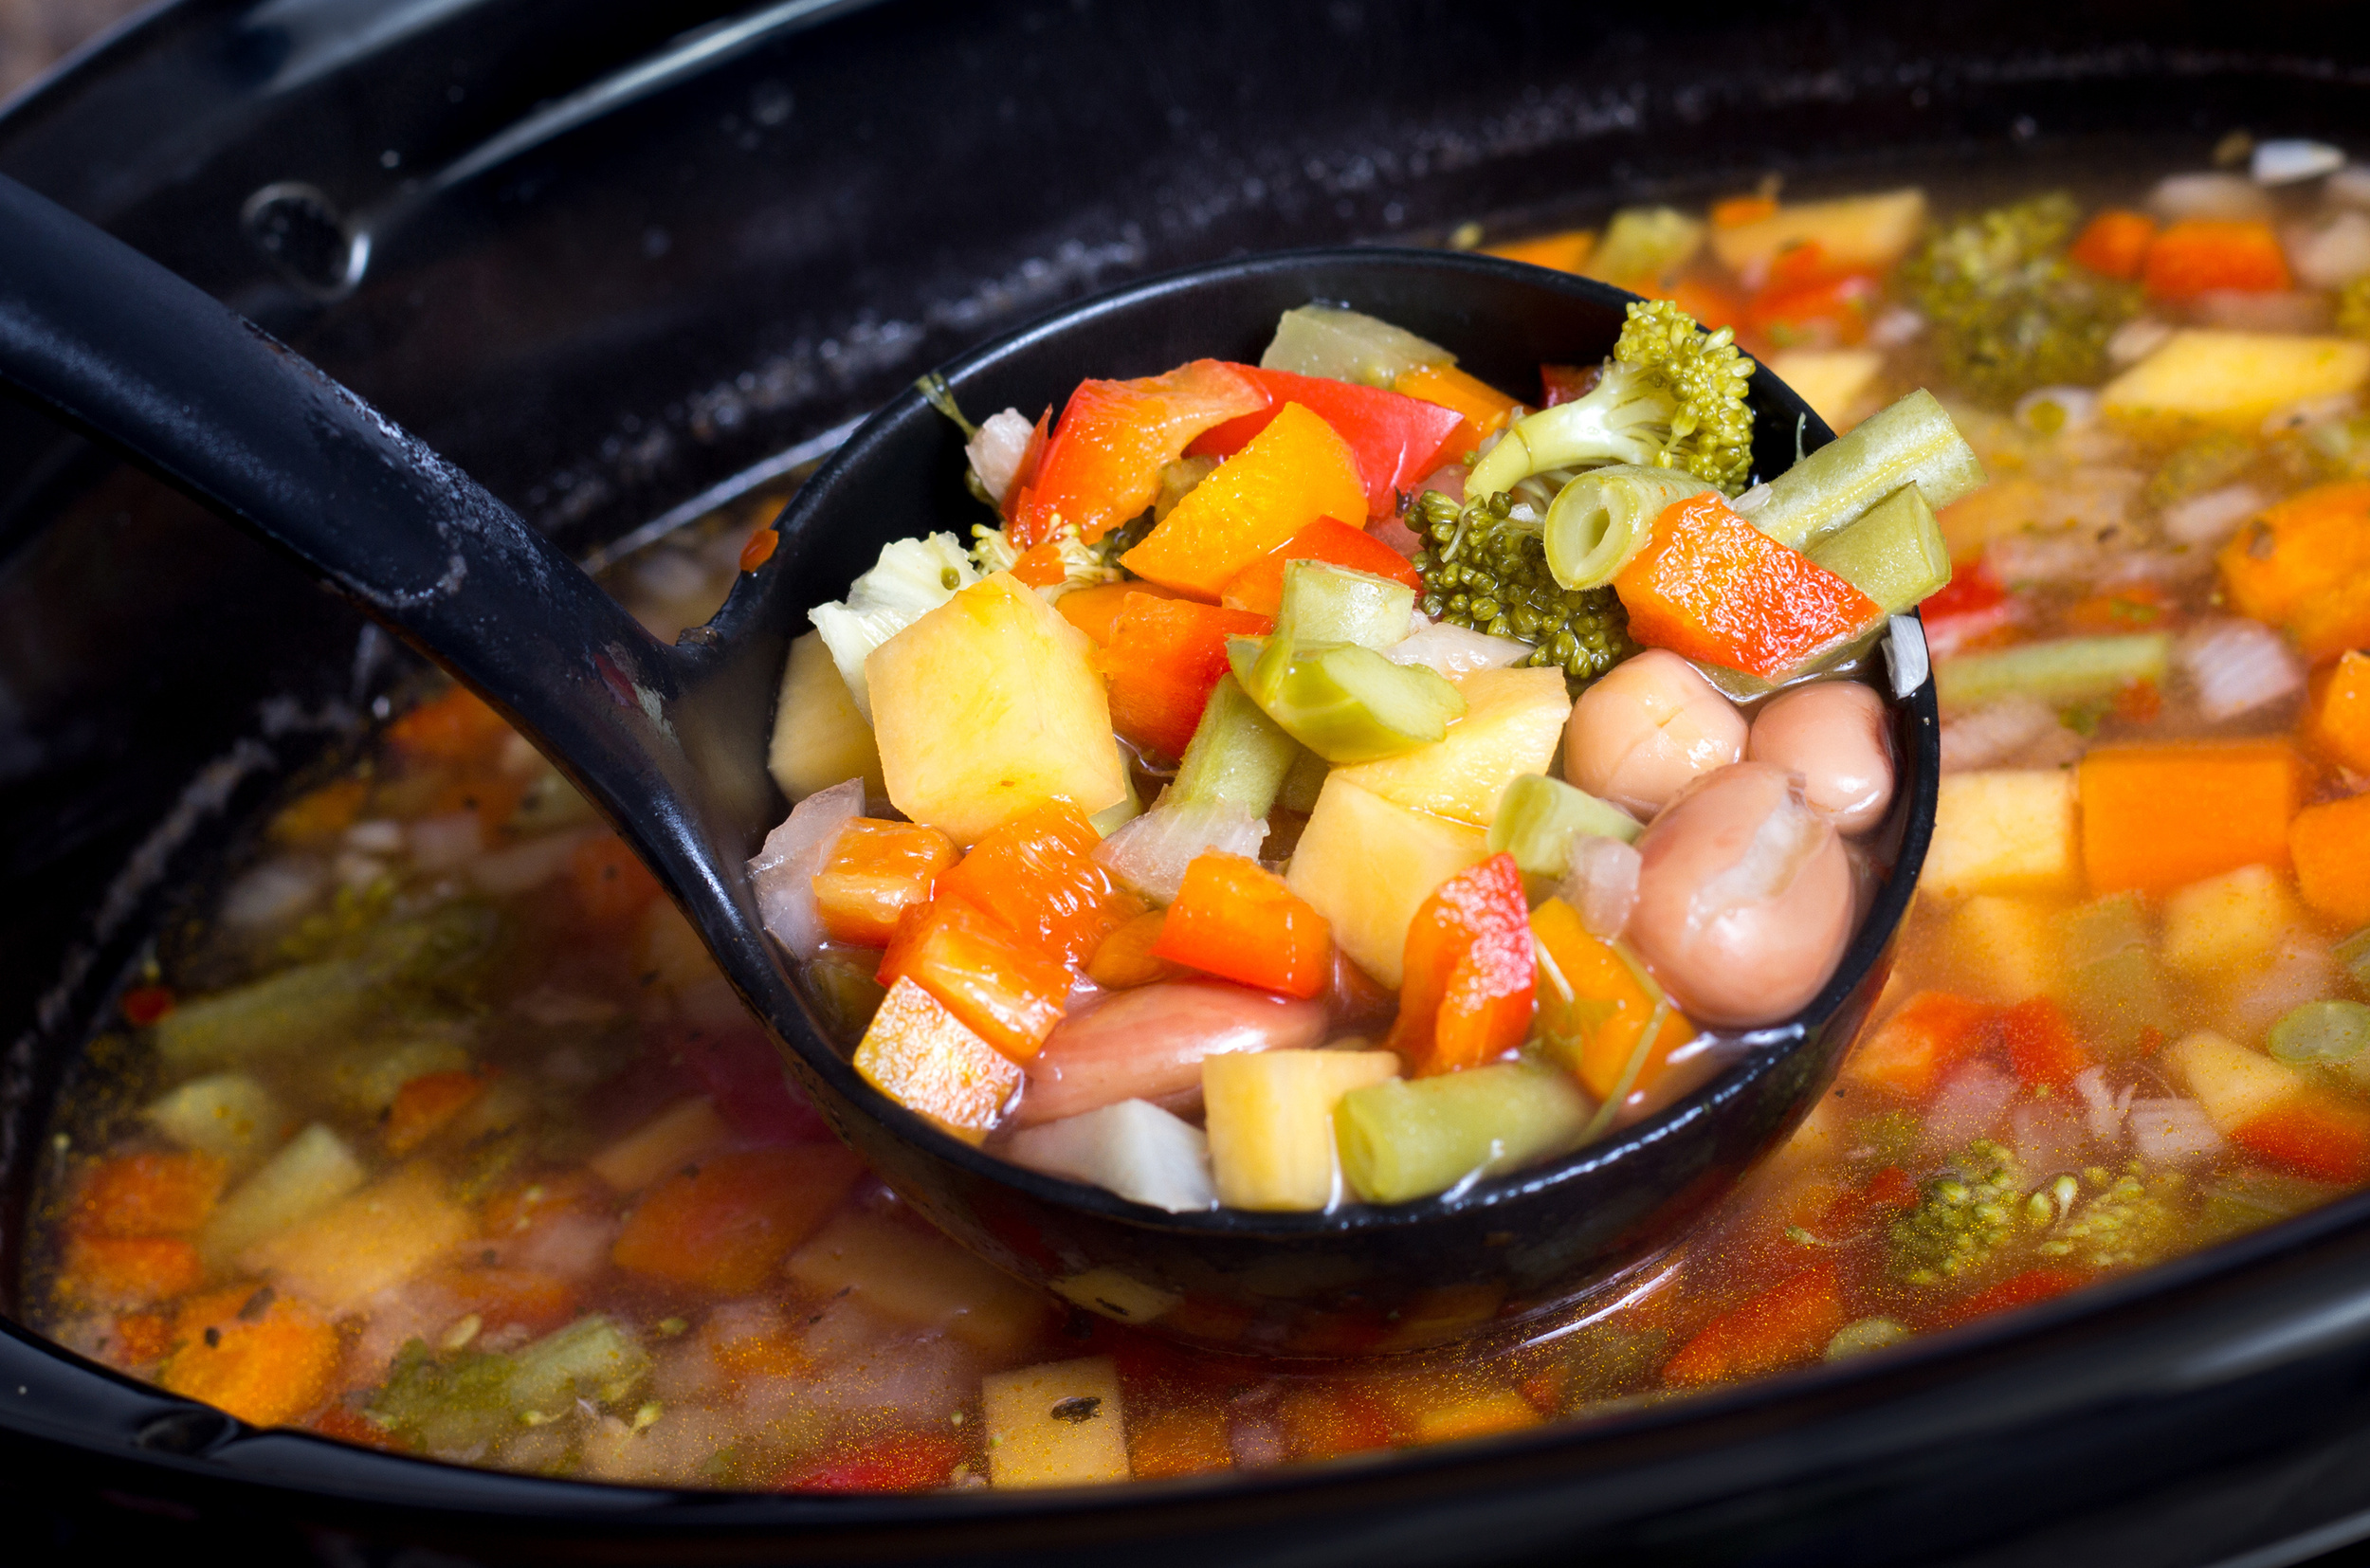 Soup season: 22 slow cooker recipes